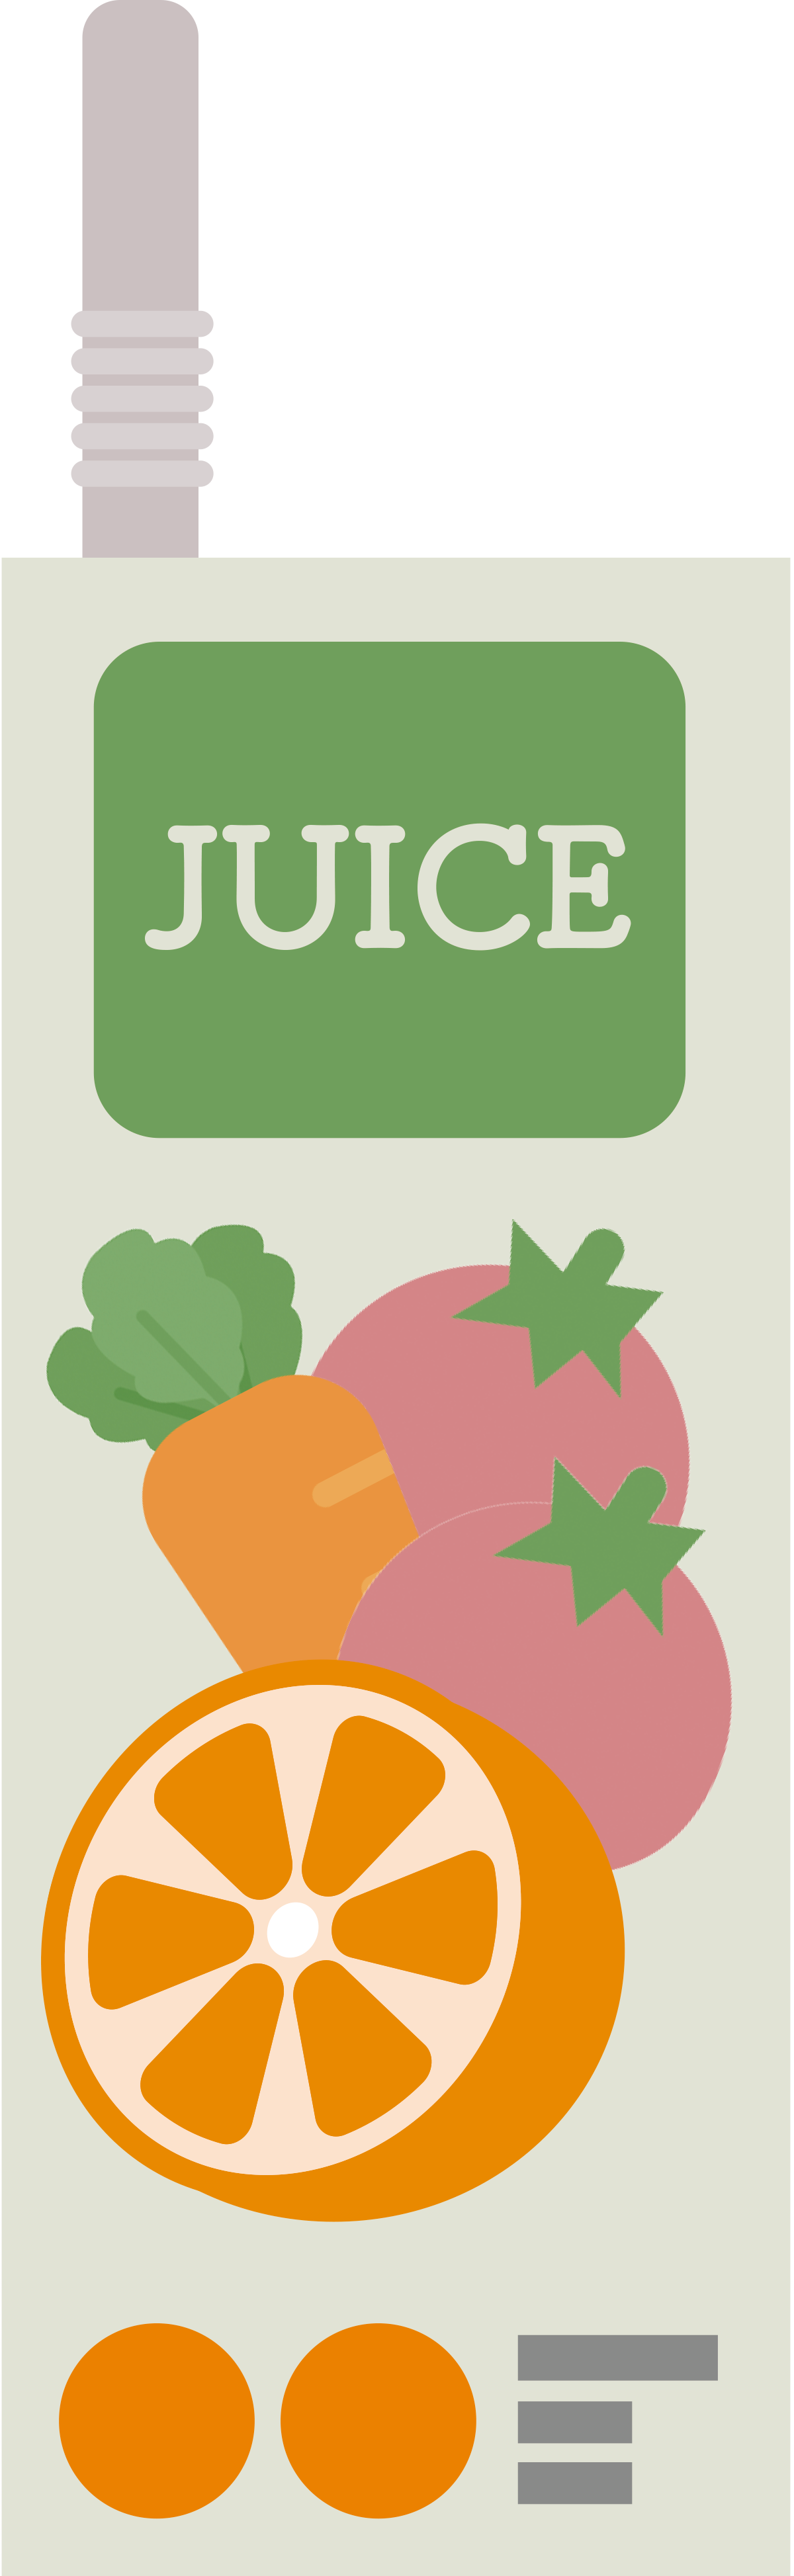 紙パックの野菜ジュースのイラスト